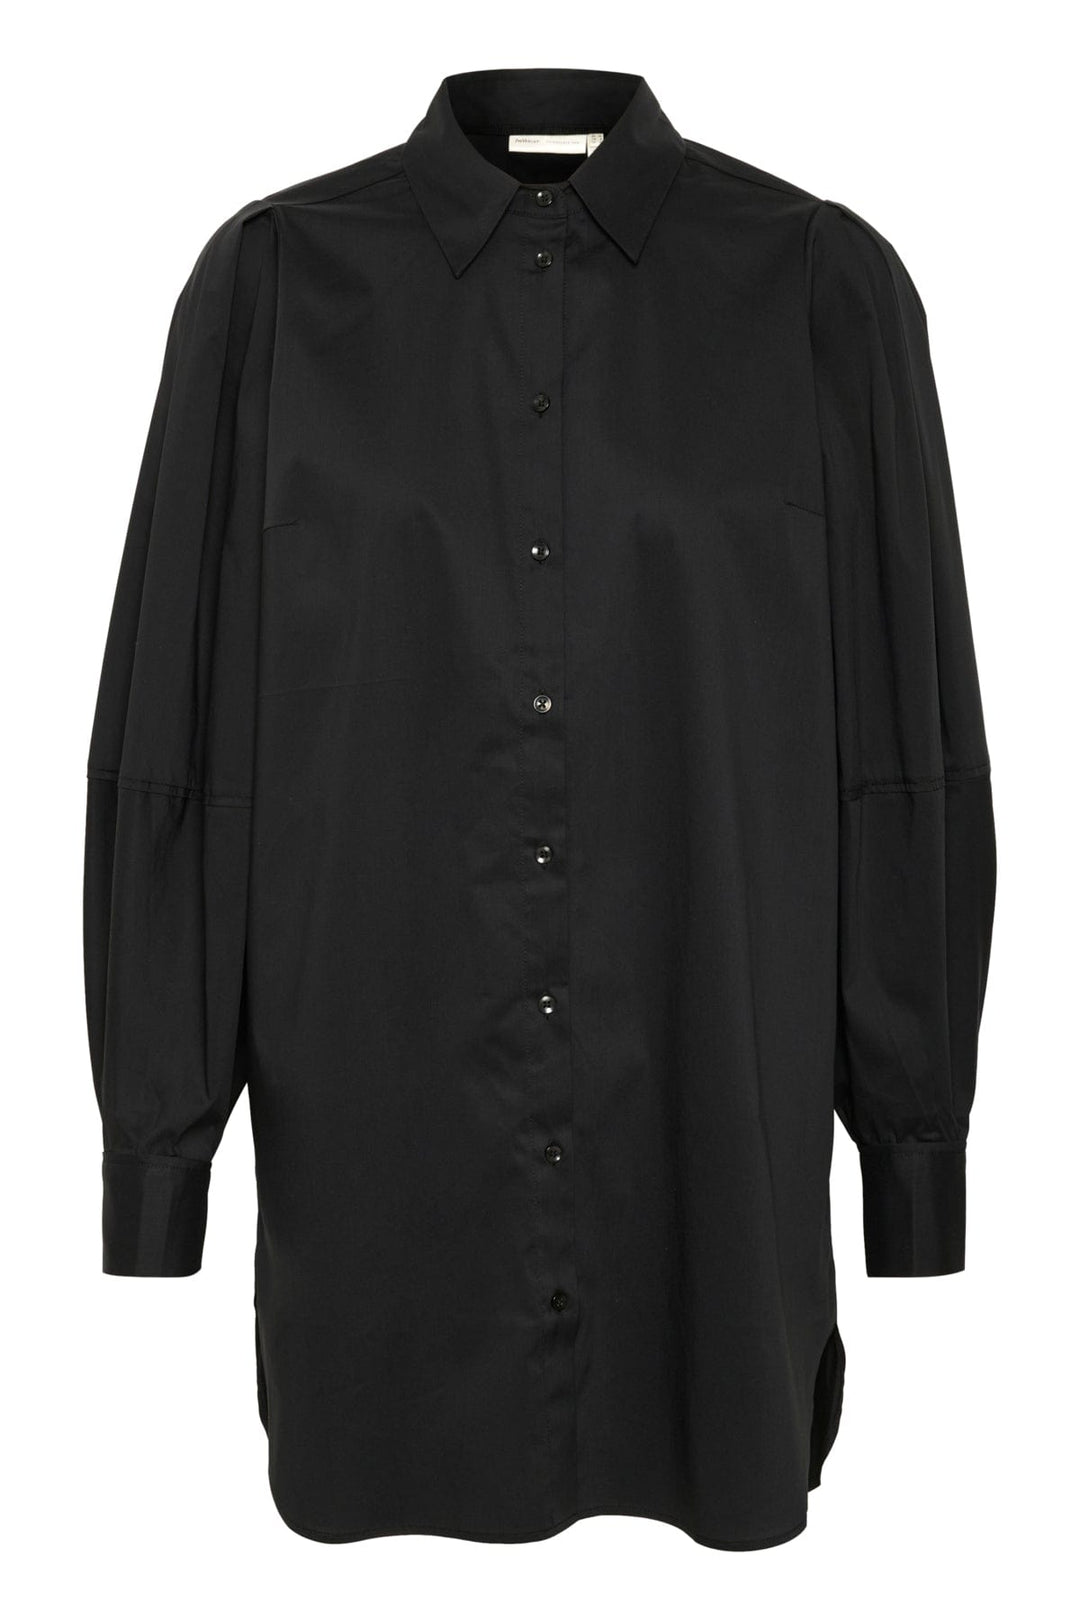 Lethiaiw Tunic Black | Skjorter og bluser | Smuk - Dameklær på nett